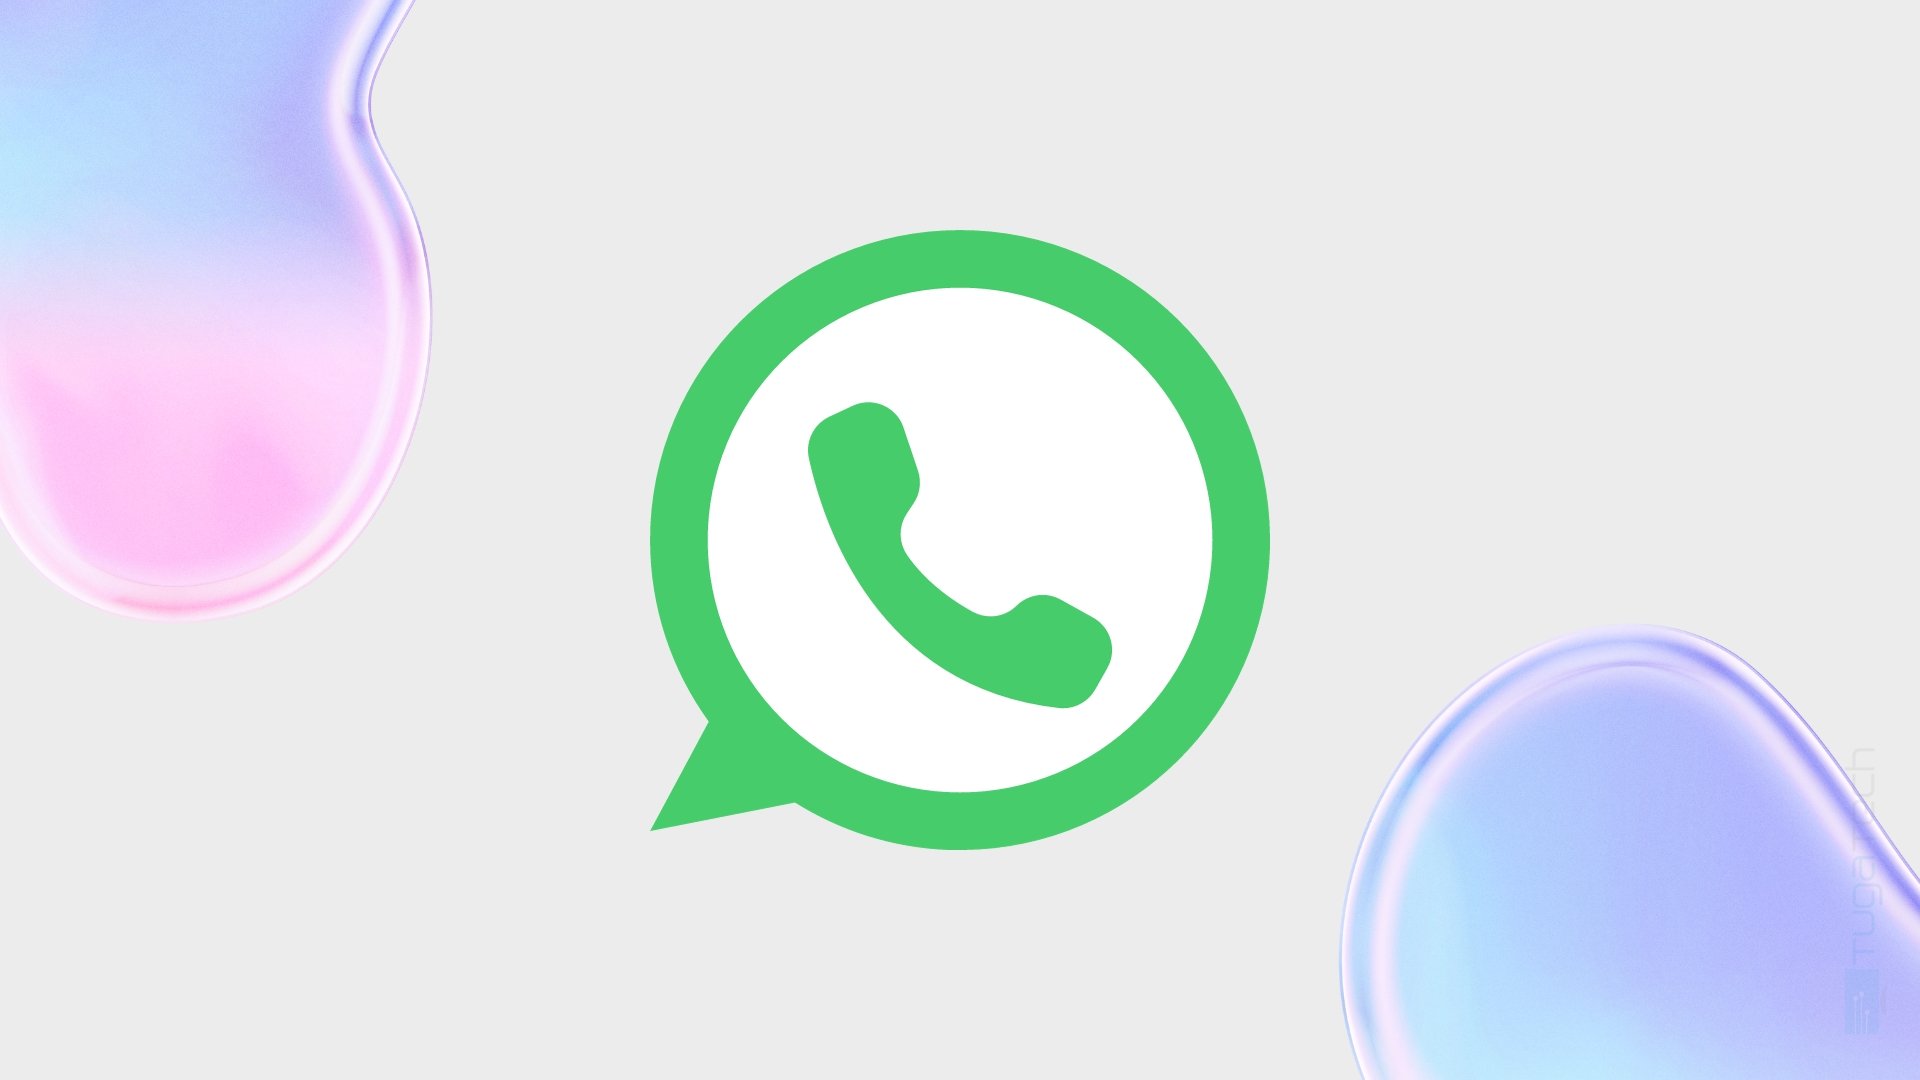 logo do whatsapp em fundo colorido